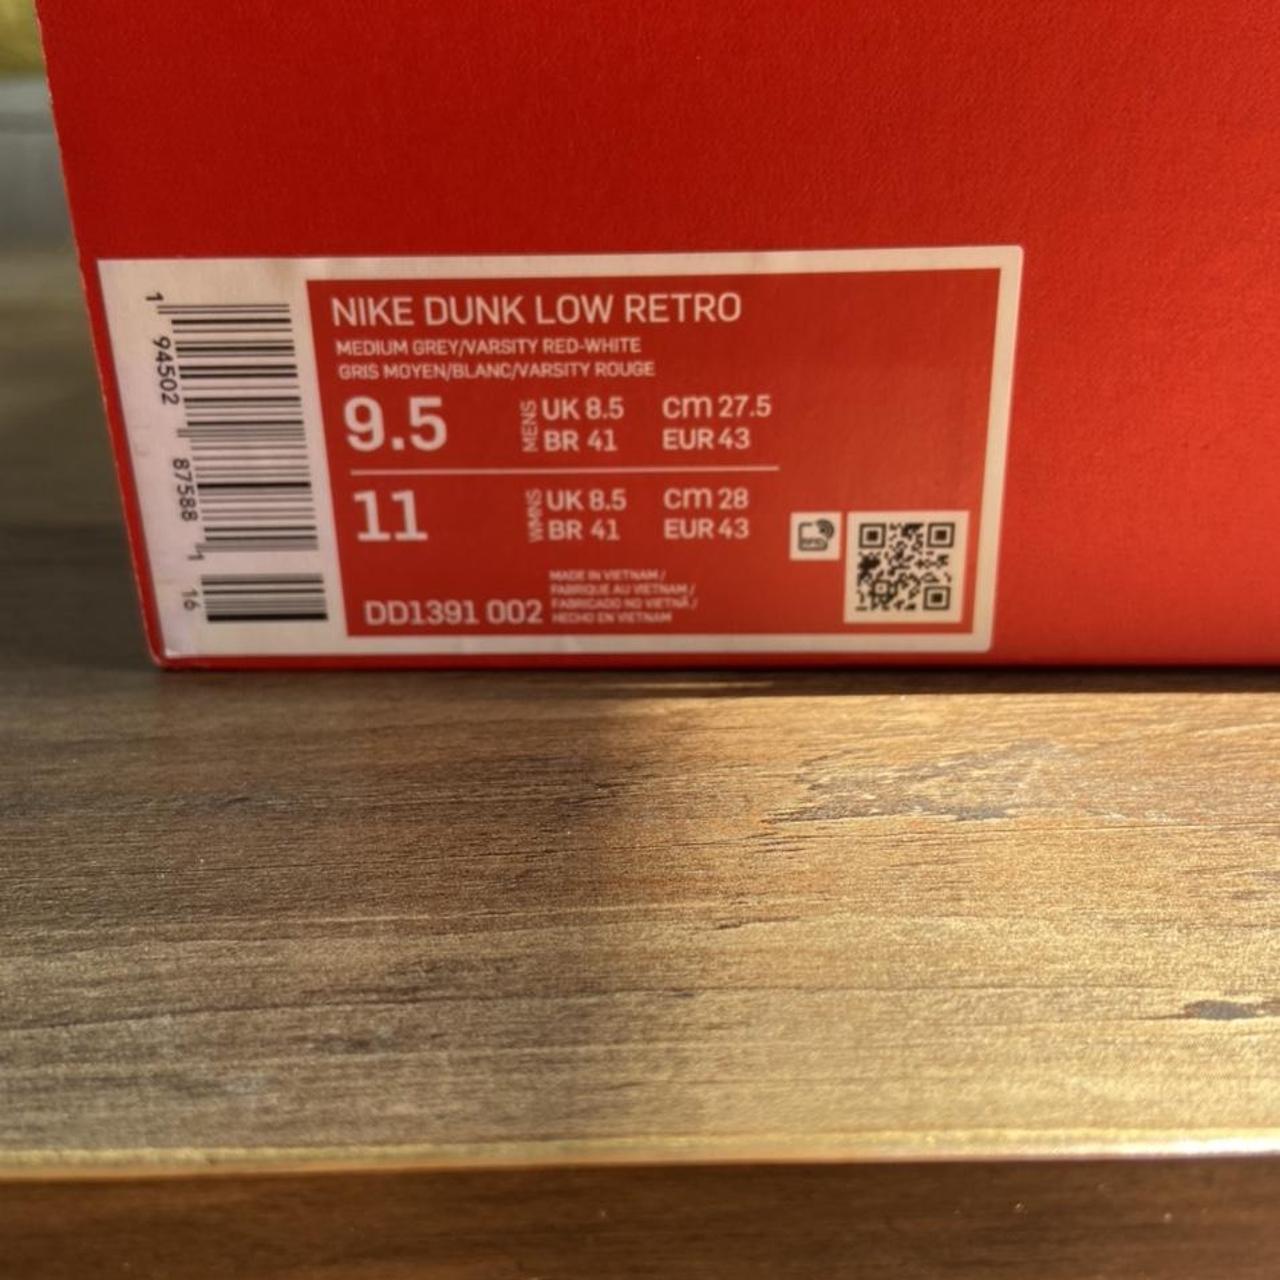 Nike dunk low retro medium grey varsity red unlv(2021) - Depop